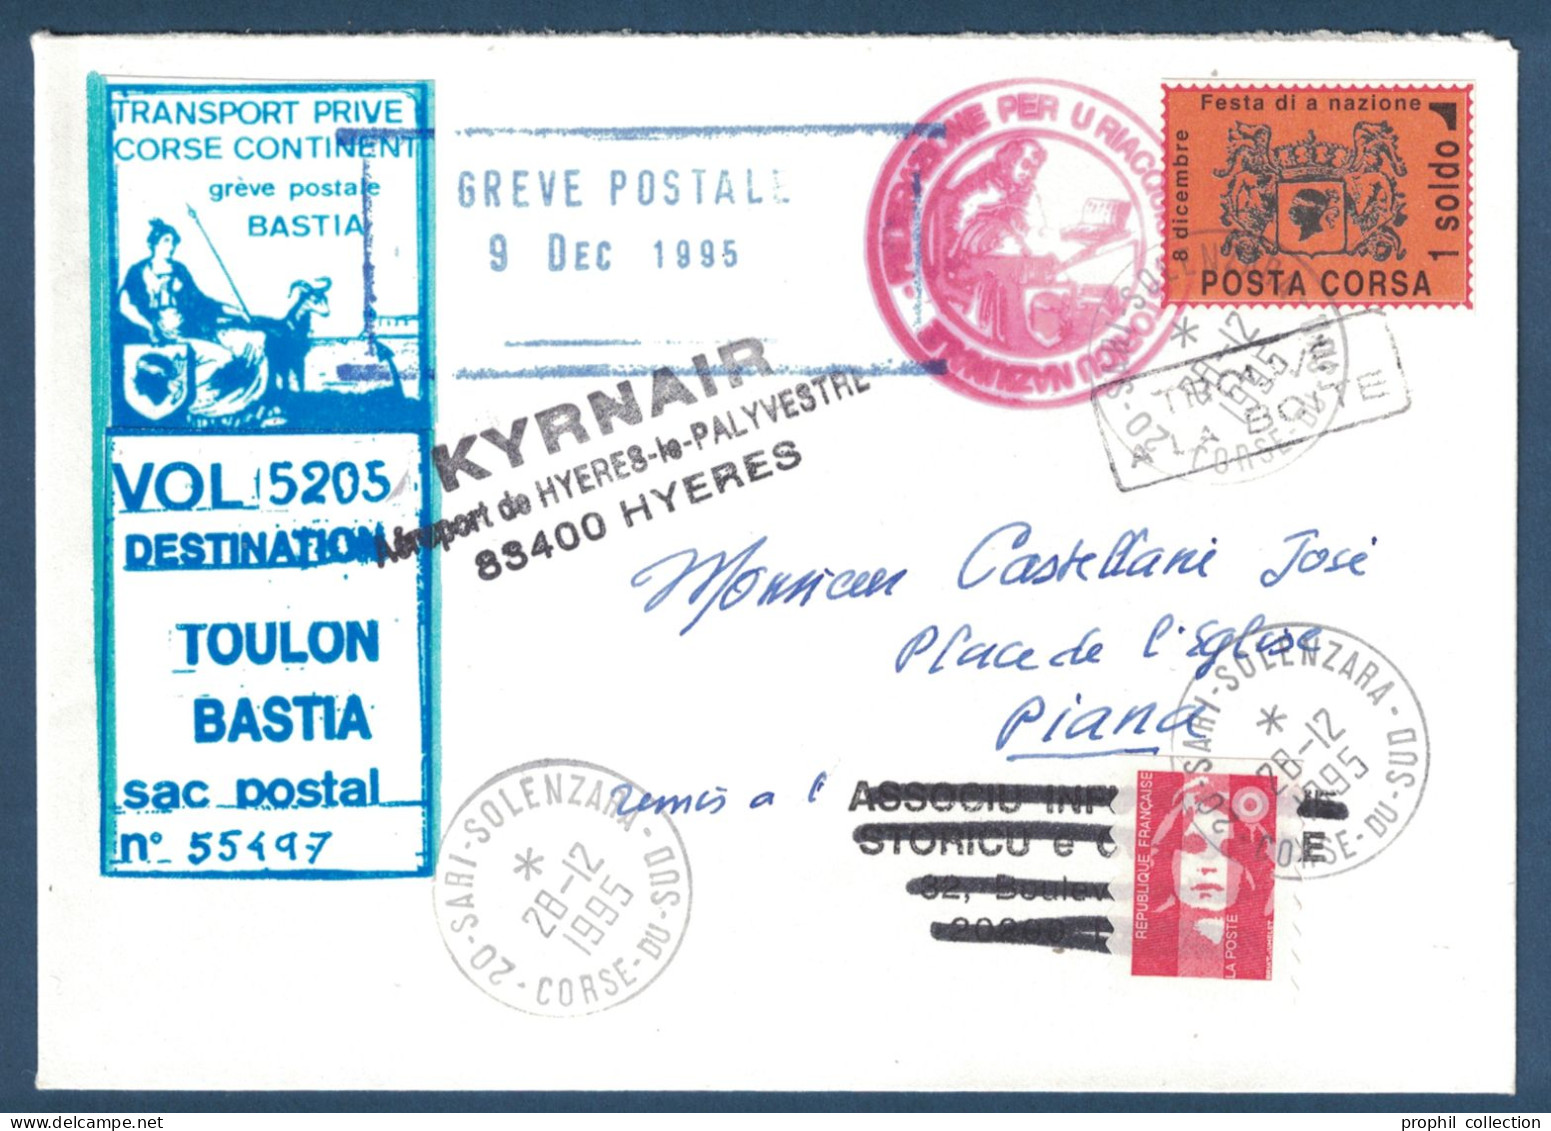 LETTRE GREVE POSTALE BASTIA 1995 VIGNETTE TRANSPORT PRIVÉ CORSE CONTINENT + VIGNETTE POSTA CORSA CAD SOLENZARA KYRNAIR - Documenten